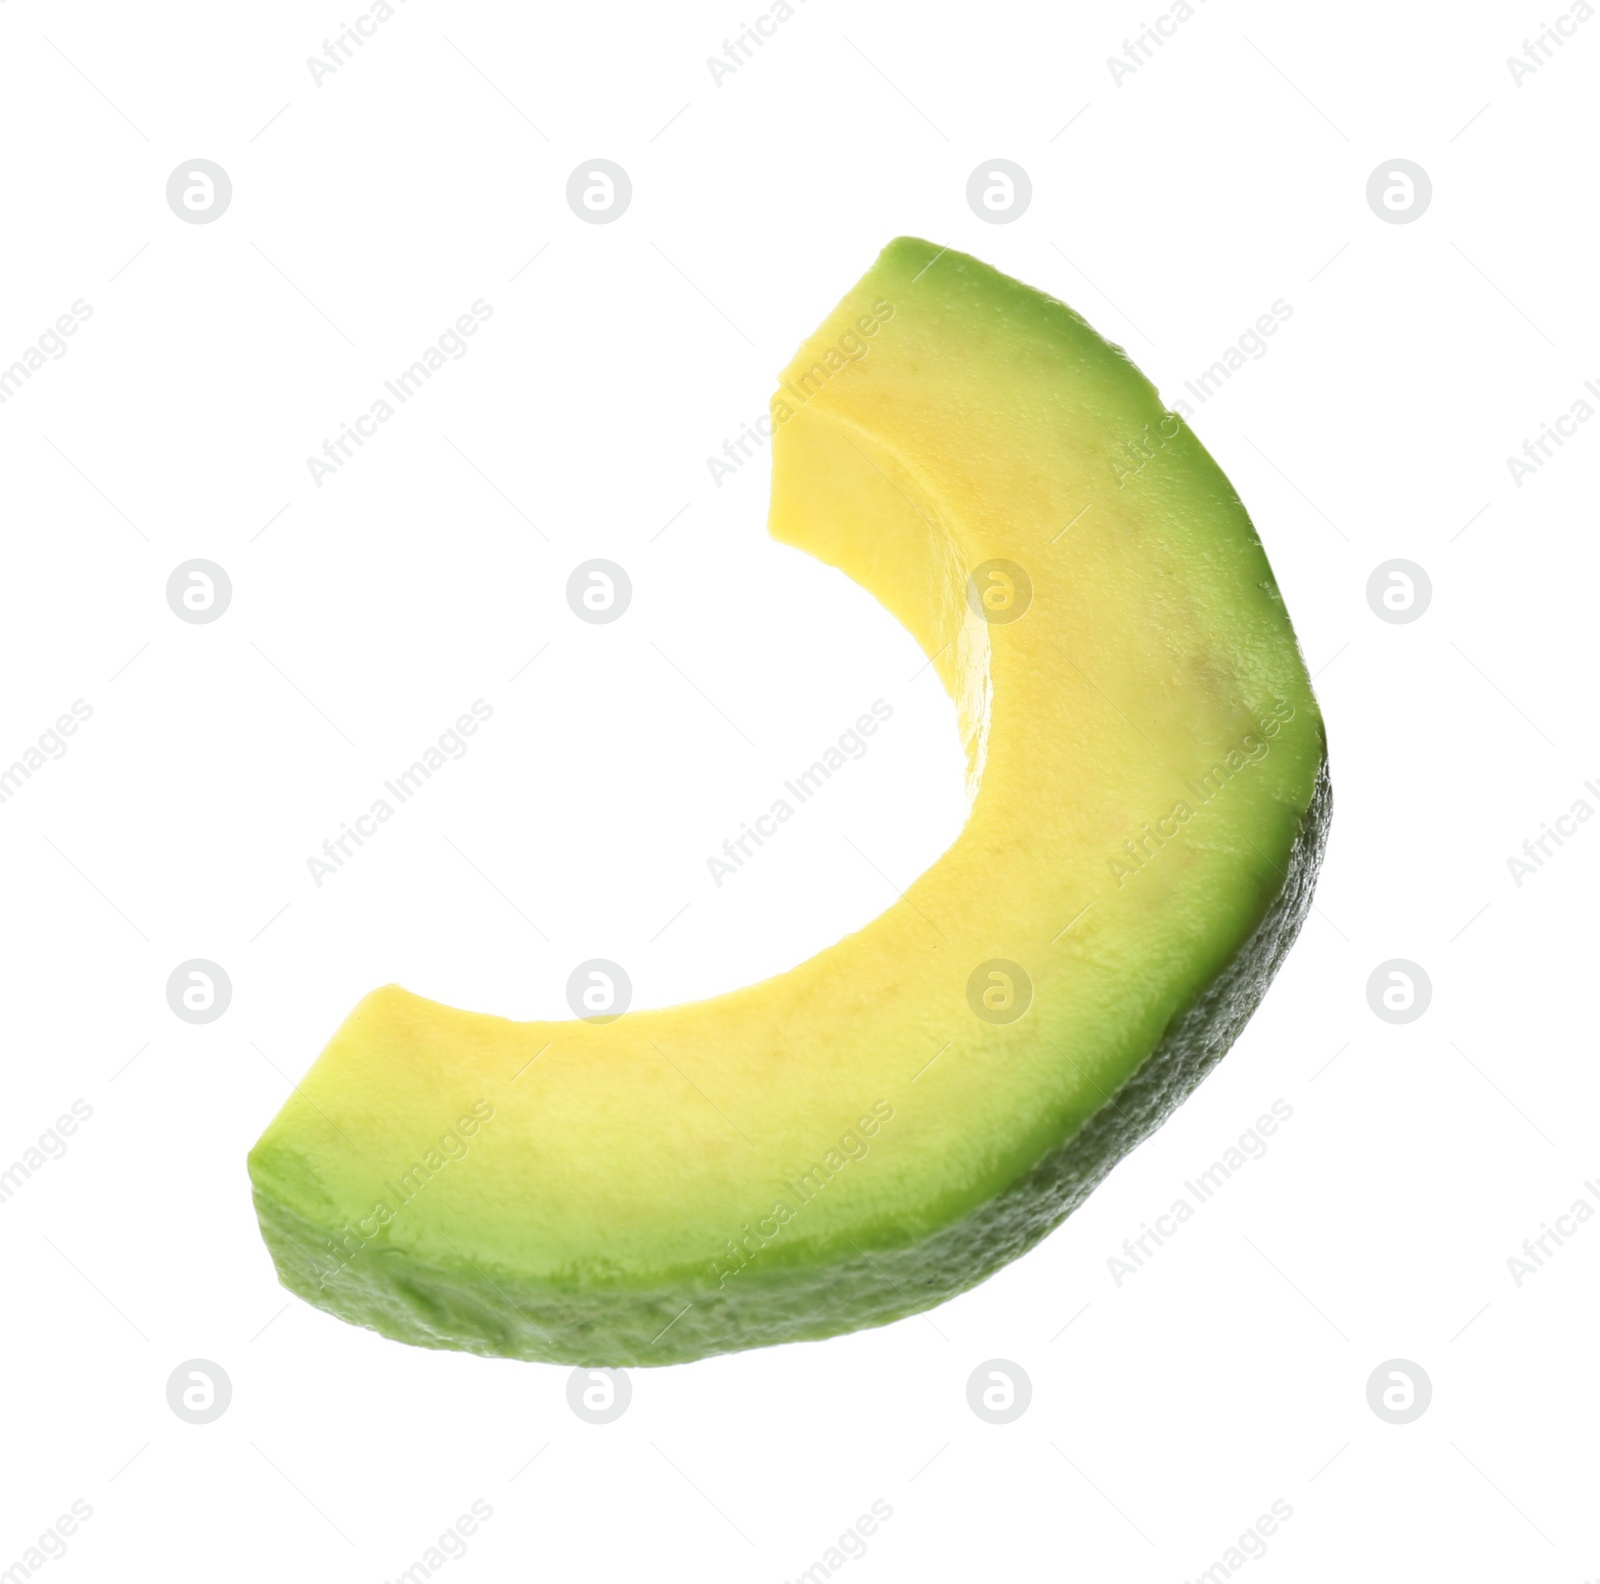 Photo of Slice of ripe avocado isolated on white